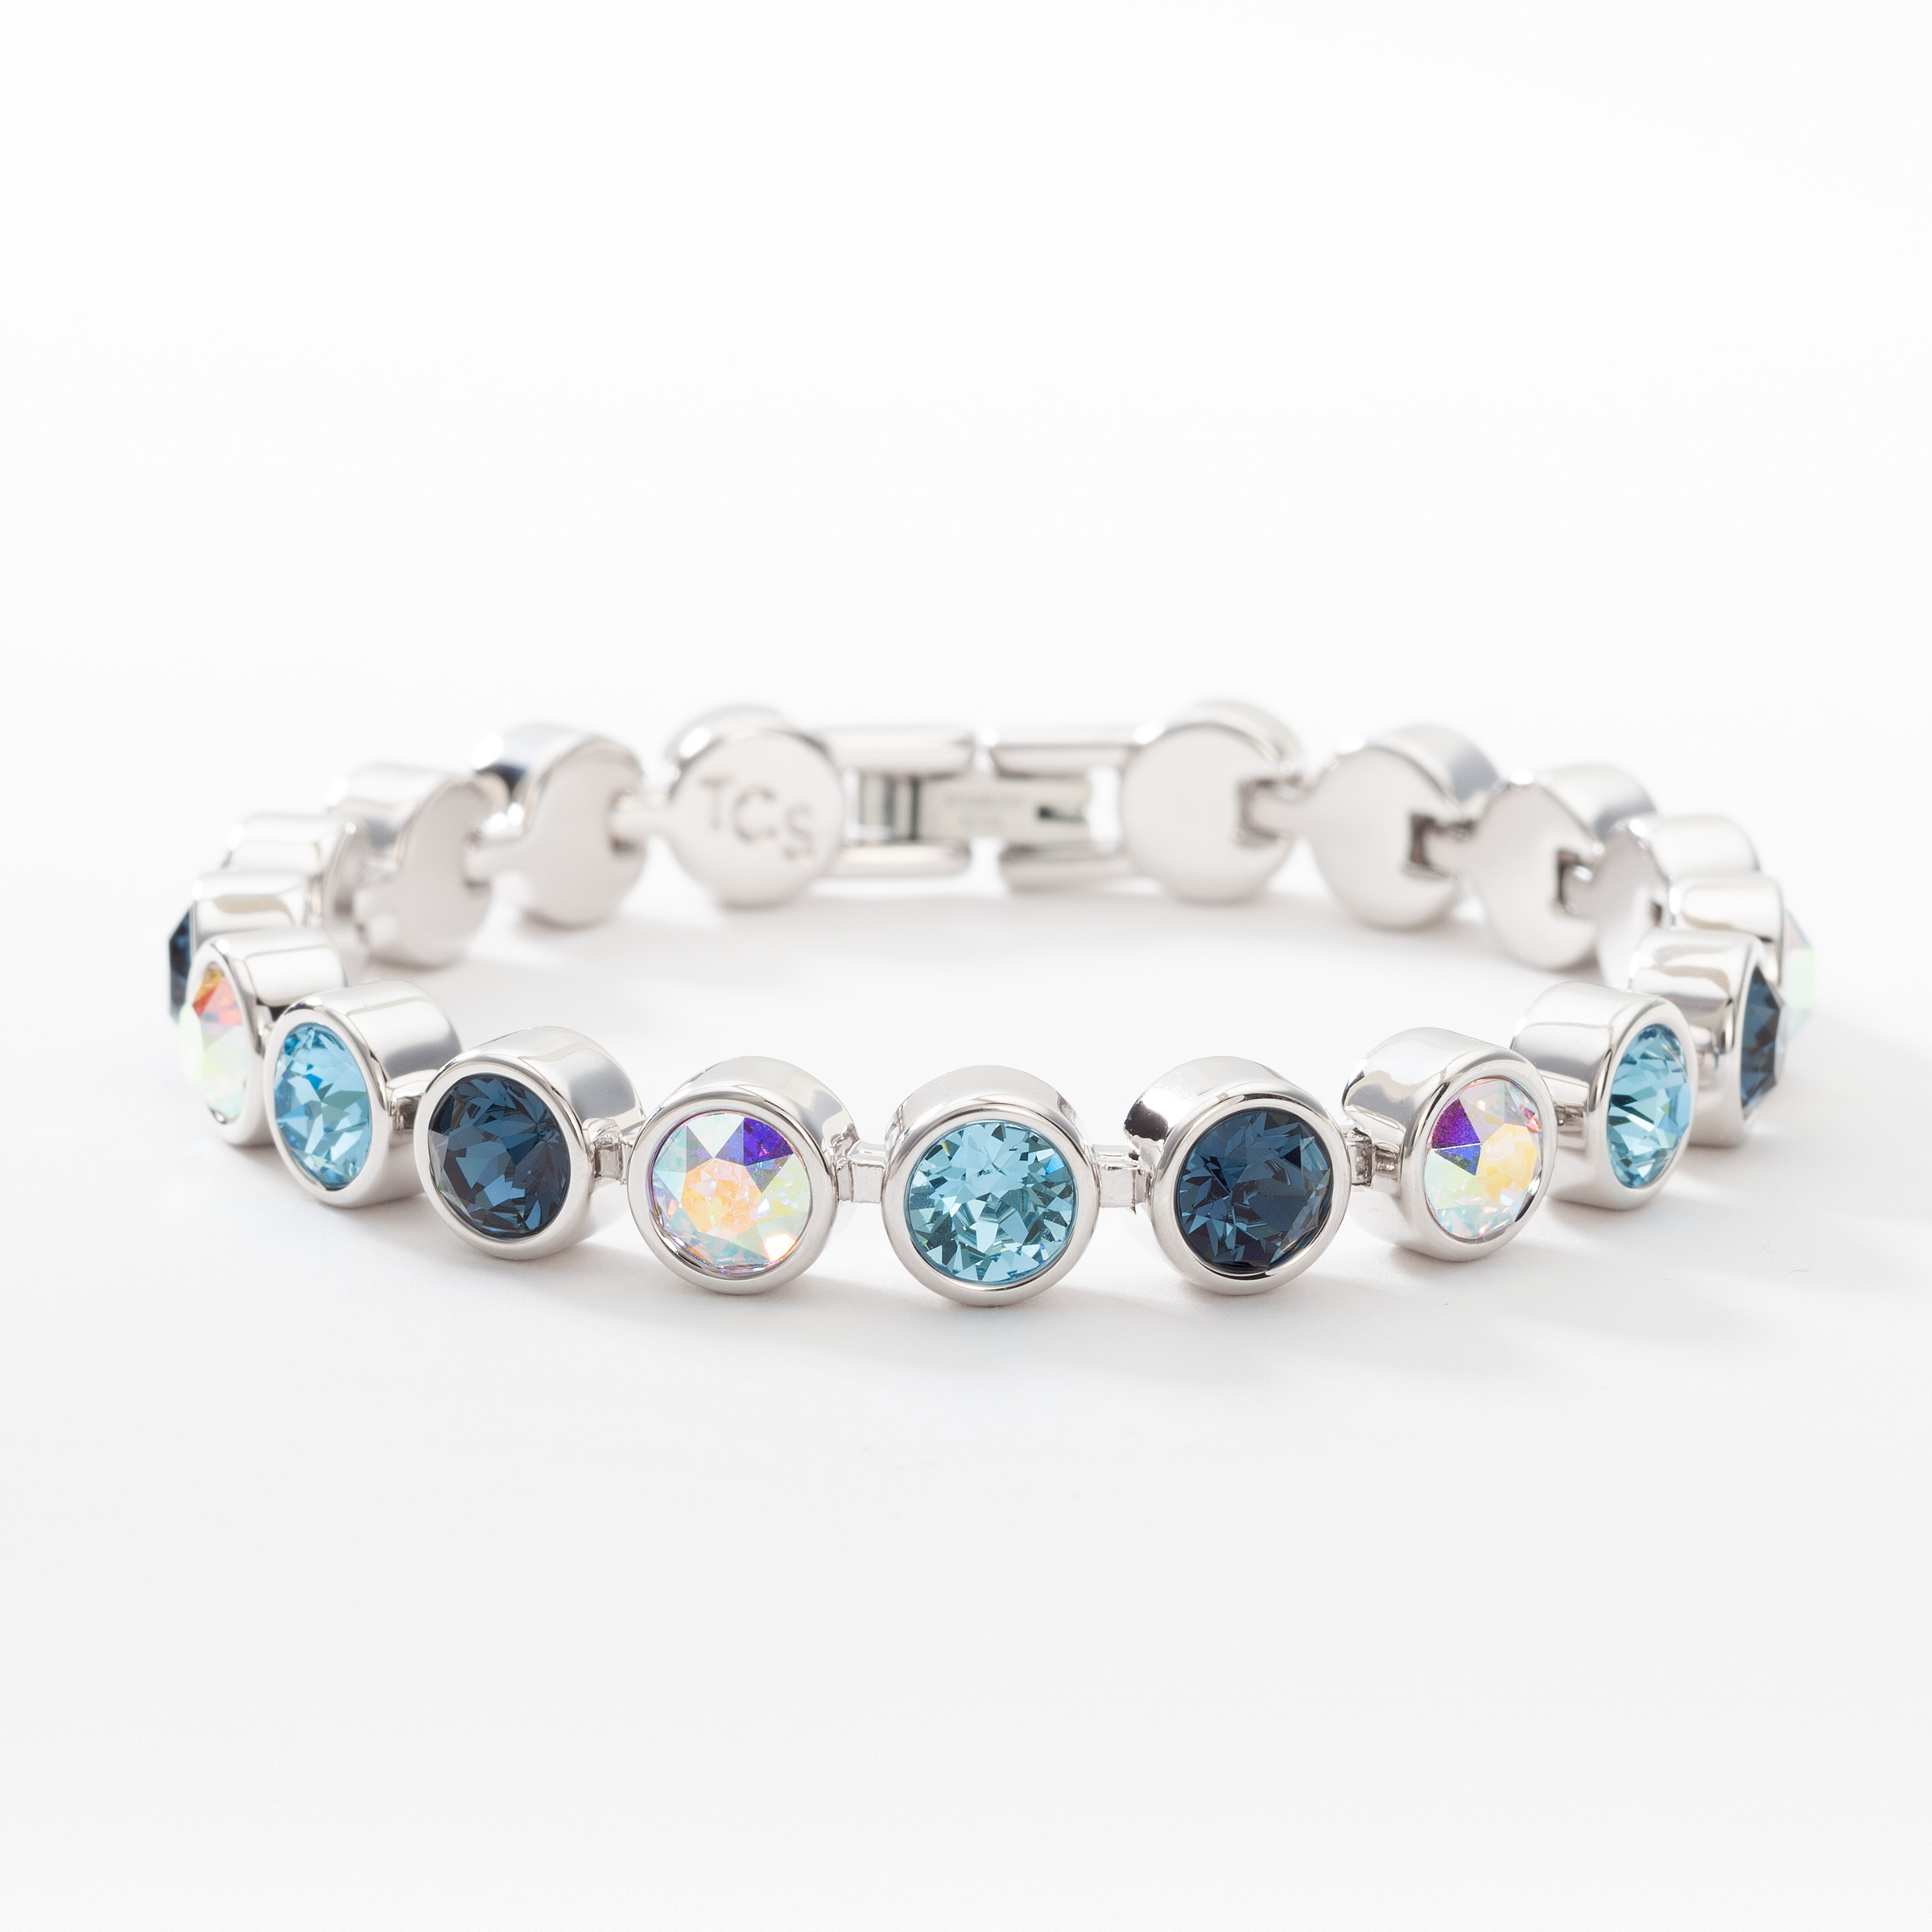 Sky Blue Apatite Gemstone Beaded Bracelet – Walter's Wish Jewelry